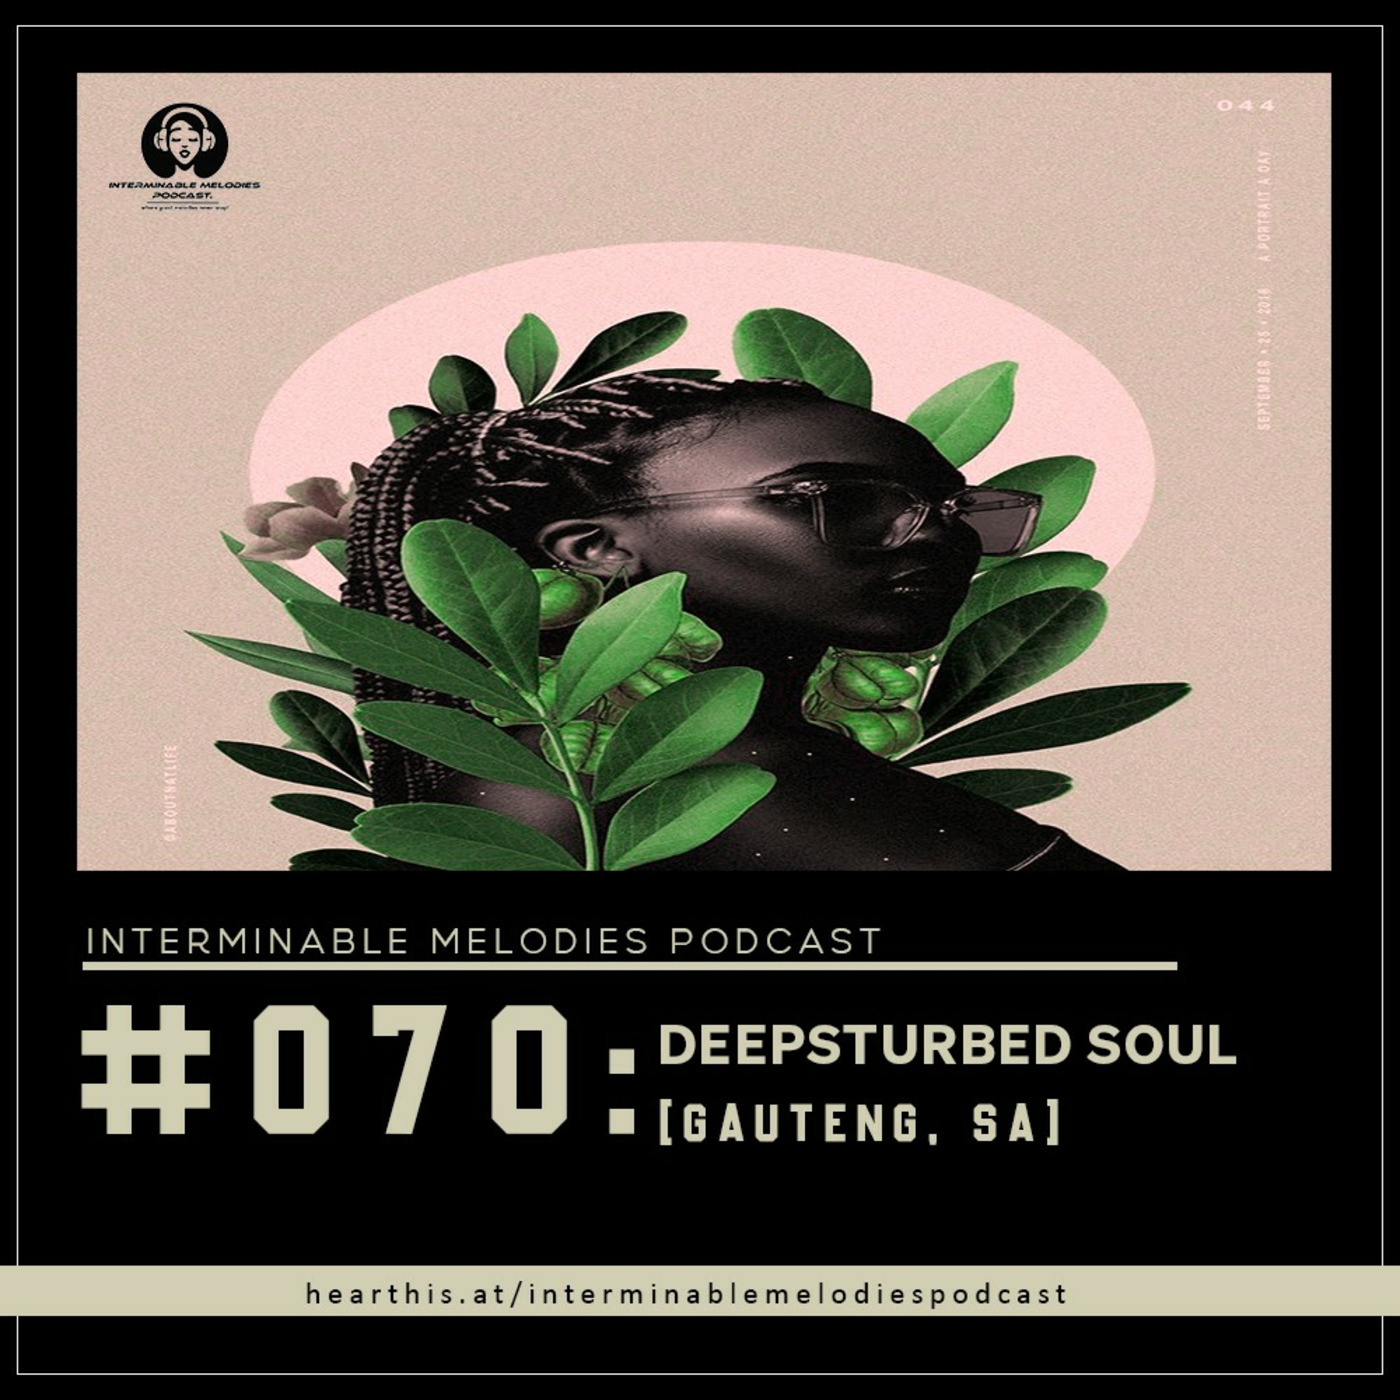 IMP - Episode #070 Guest Mix By Deepsturbed Soul (Gauteng, SA)